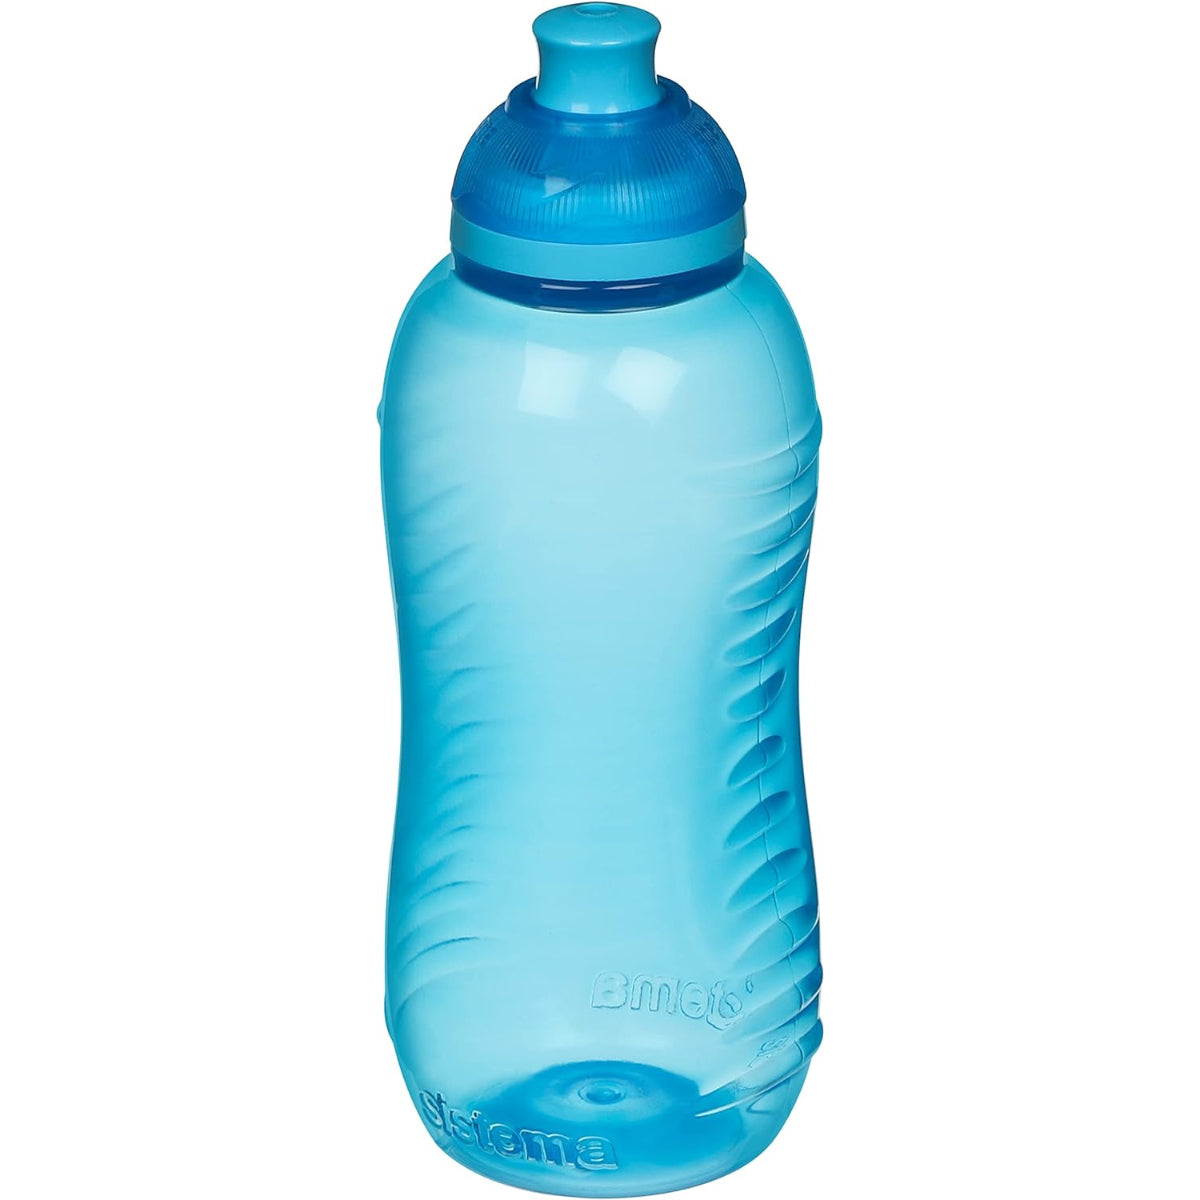 בקבוק שתייה 330 מ"ל Sistema Twister מעורב צבעים